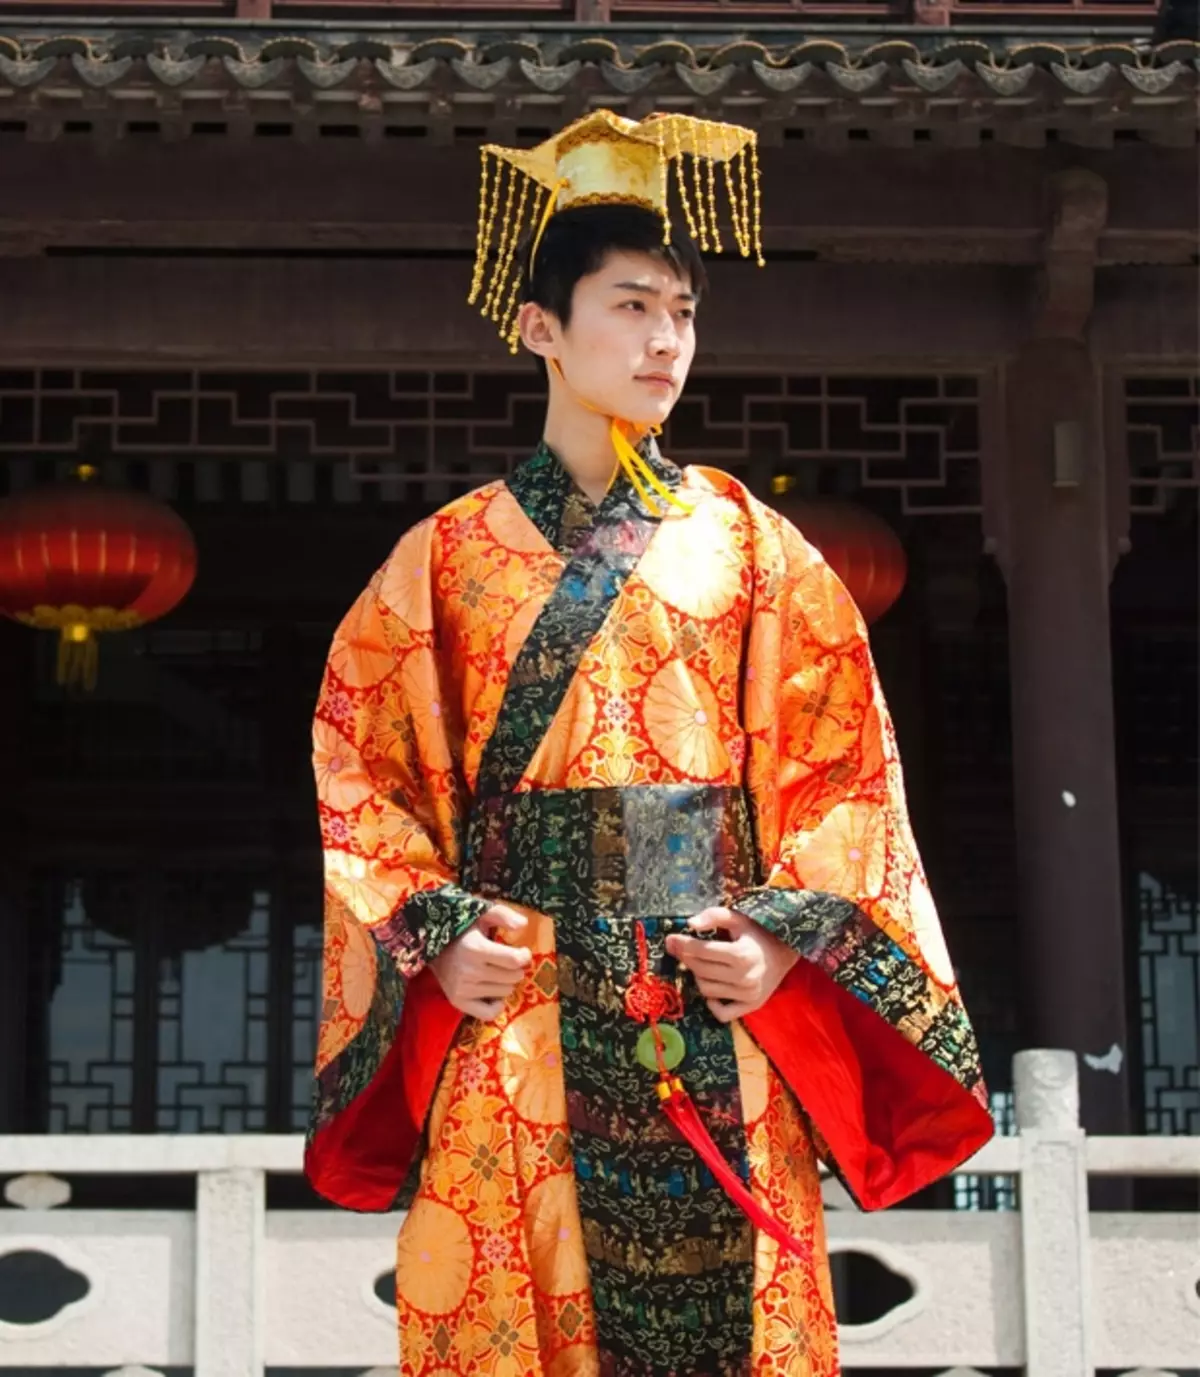 החליפה הלאומית הסינית (73 תמונות): תלבושת נקבה מסורתית של עמי סין, חליפה לילדה 1377_16